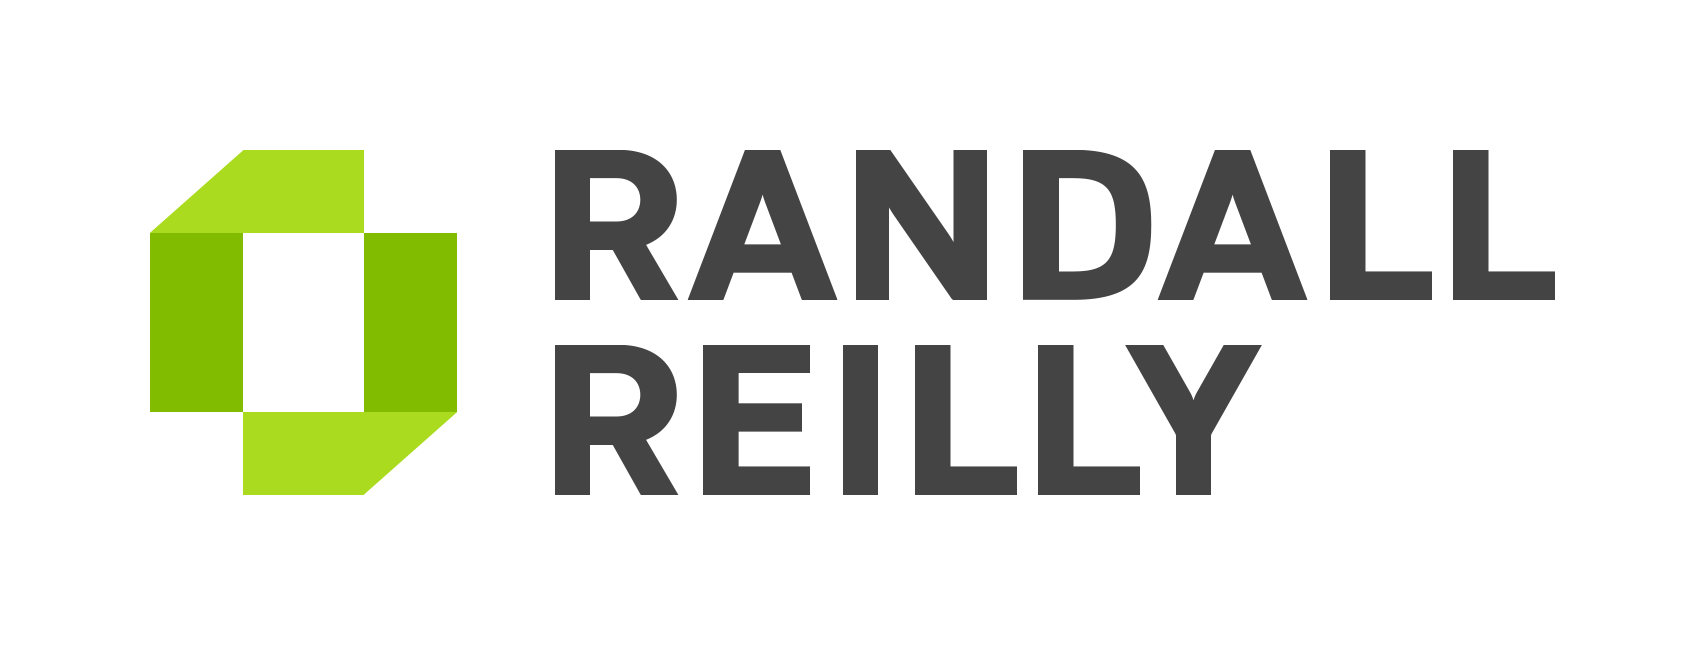 Randall-Reilly, LLC logo